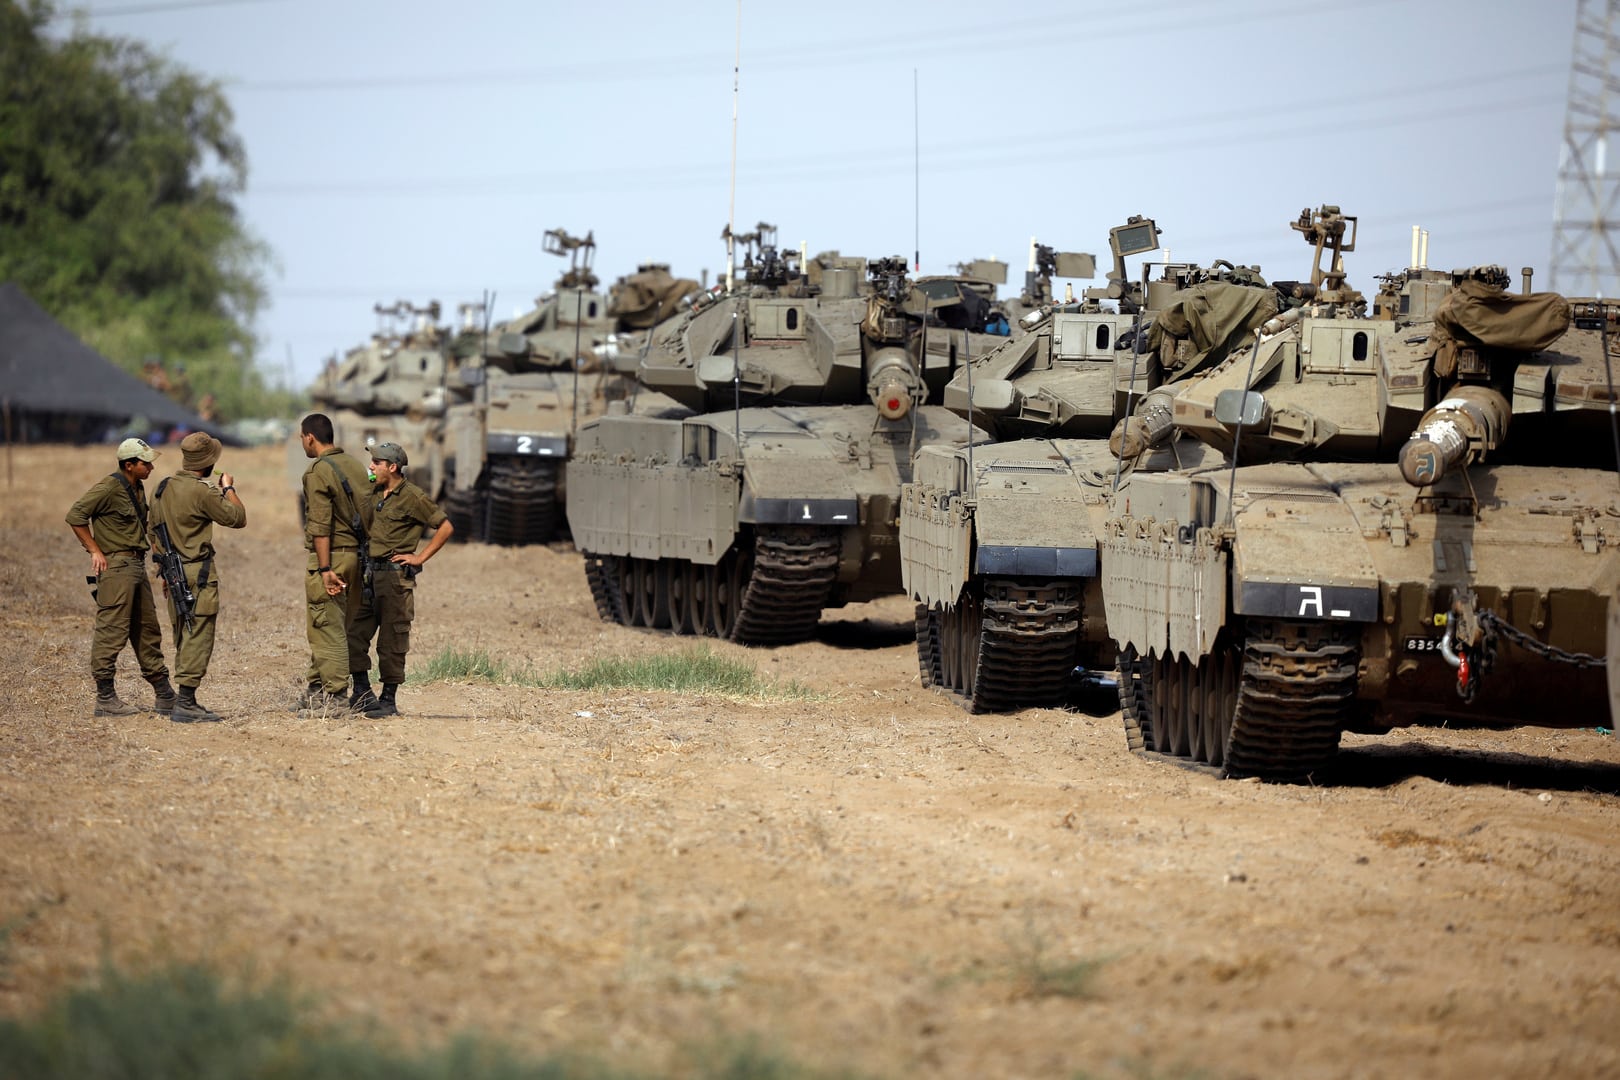 ما حقيقة بدء توغل الجيش الإسرائيلي بريا في قطاع غزة فعلا ؟